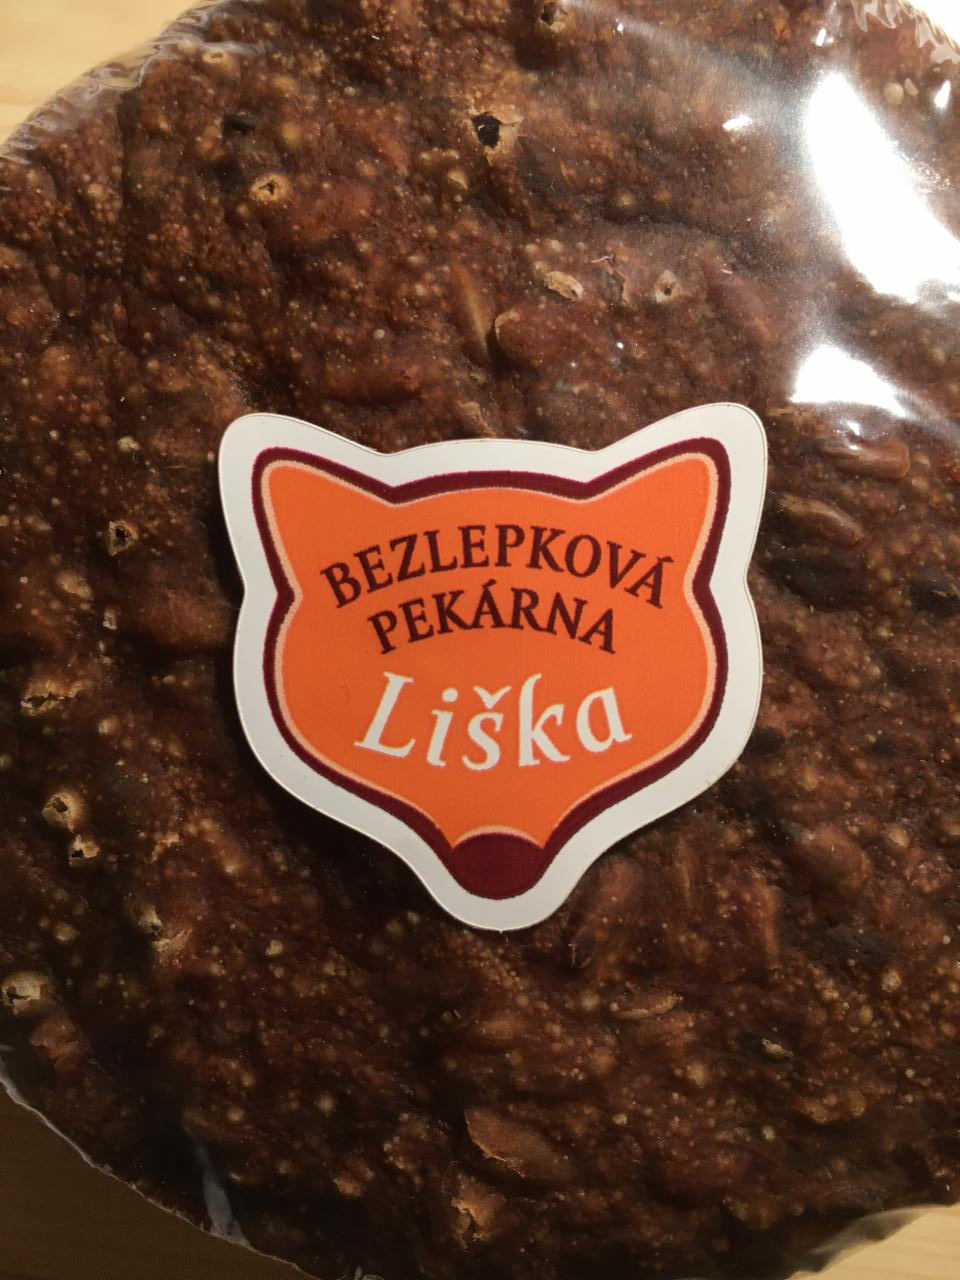 Fotografie - Bezlepkový bandur rustikal Bezlepková pekárna Liška